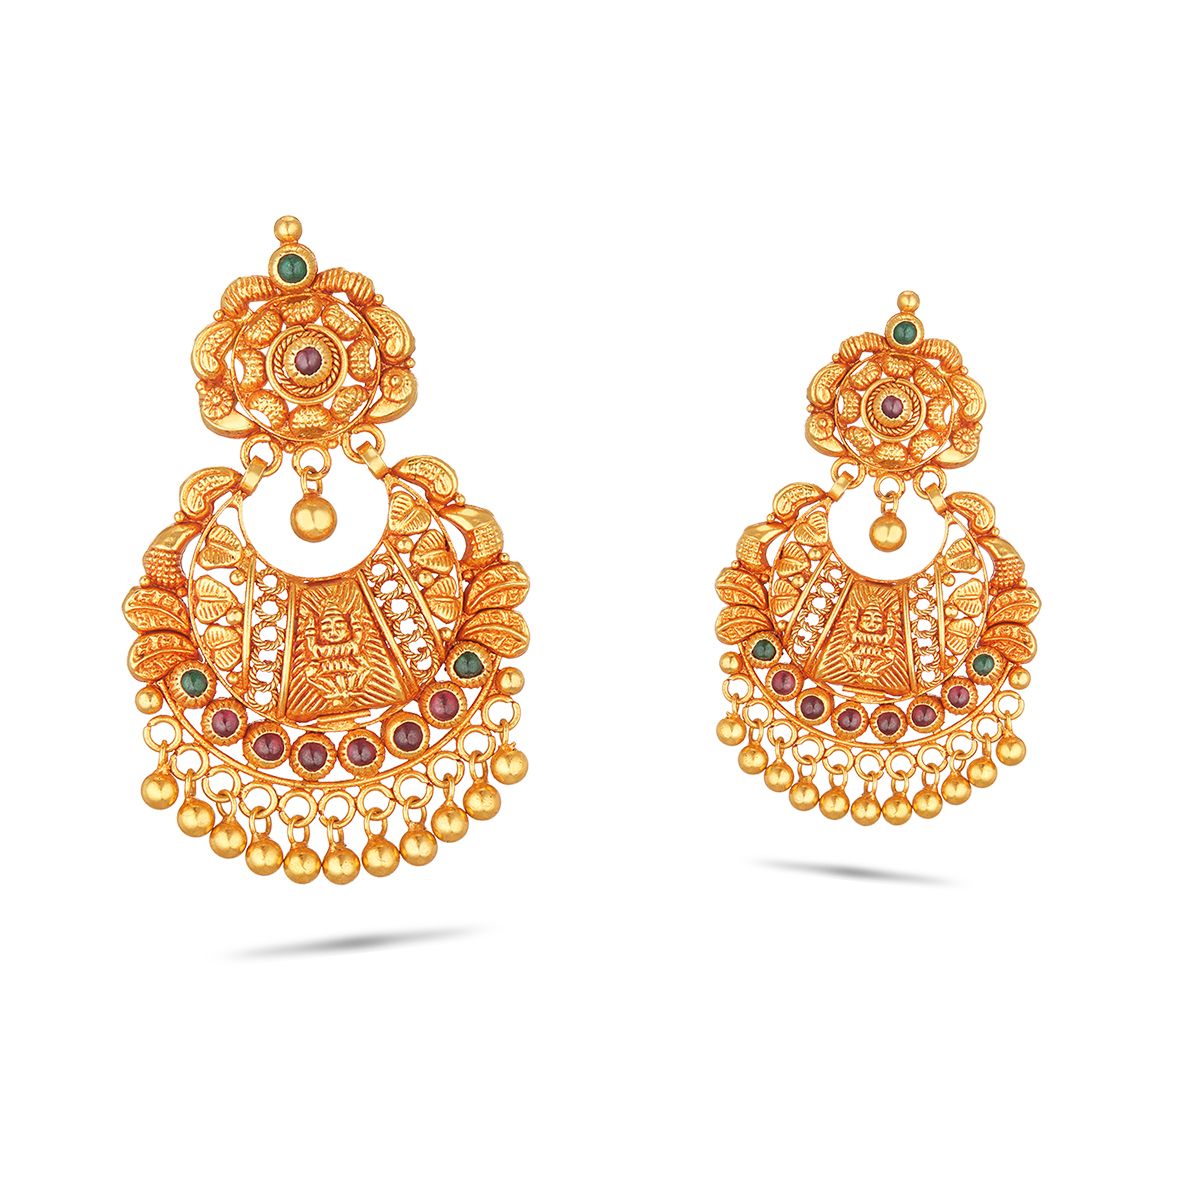 ANIID Indian 24K Gold Plated Big Earring Dubai Luxury Tassel Stud Earrings  For Women Pendant Earring